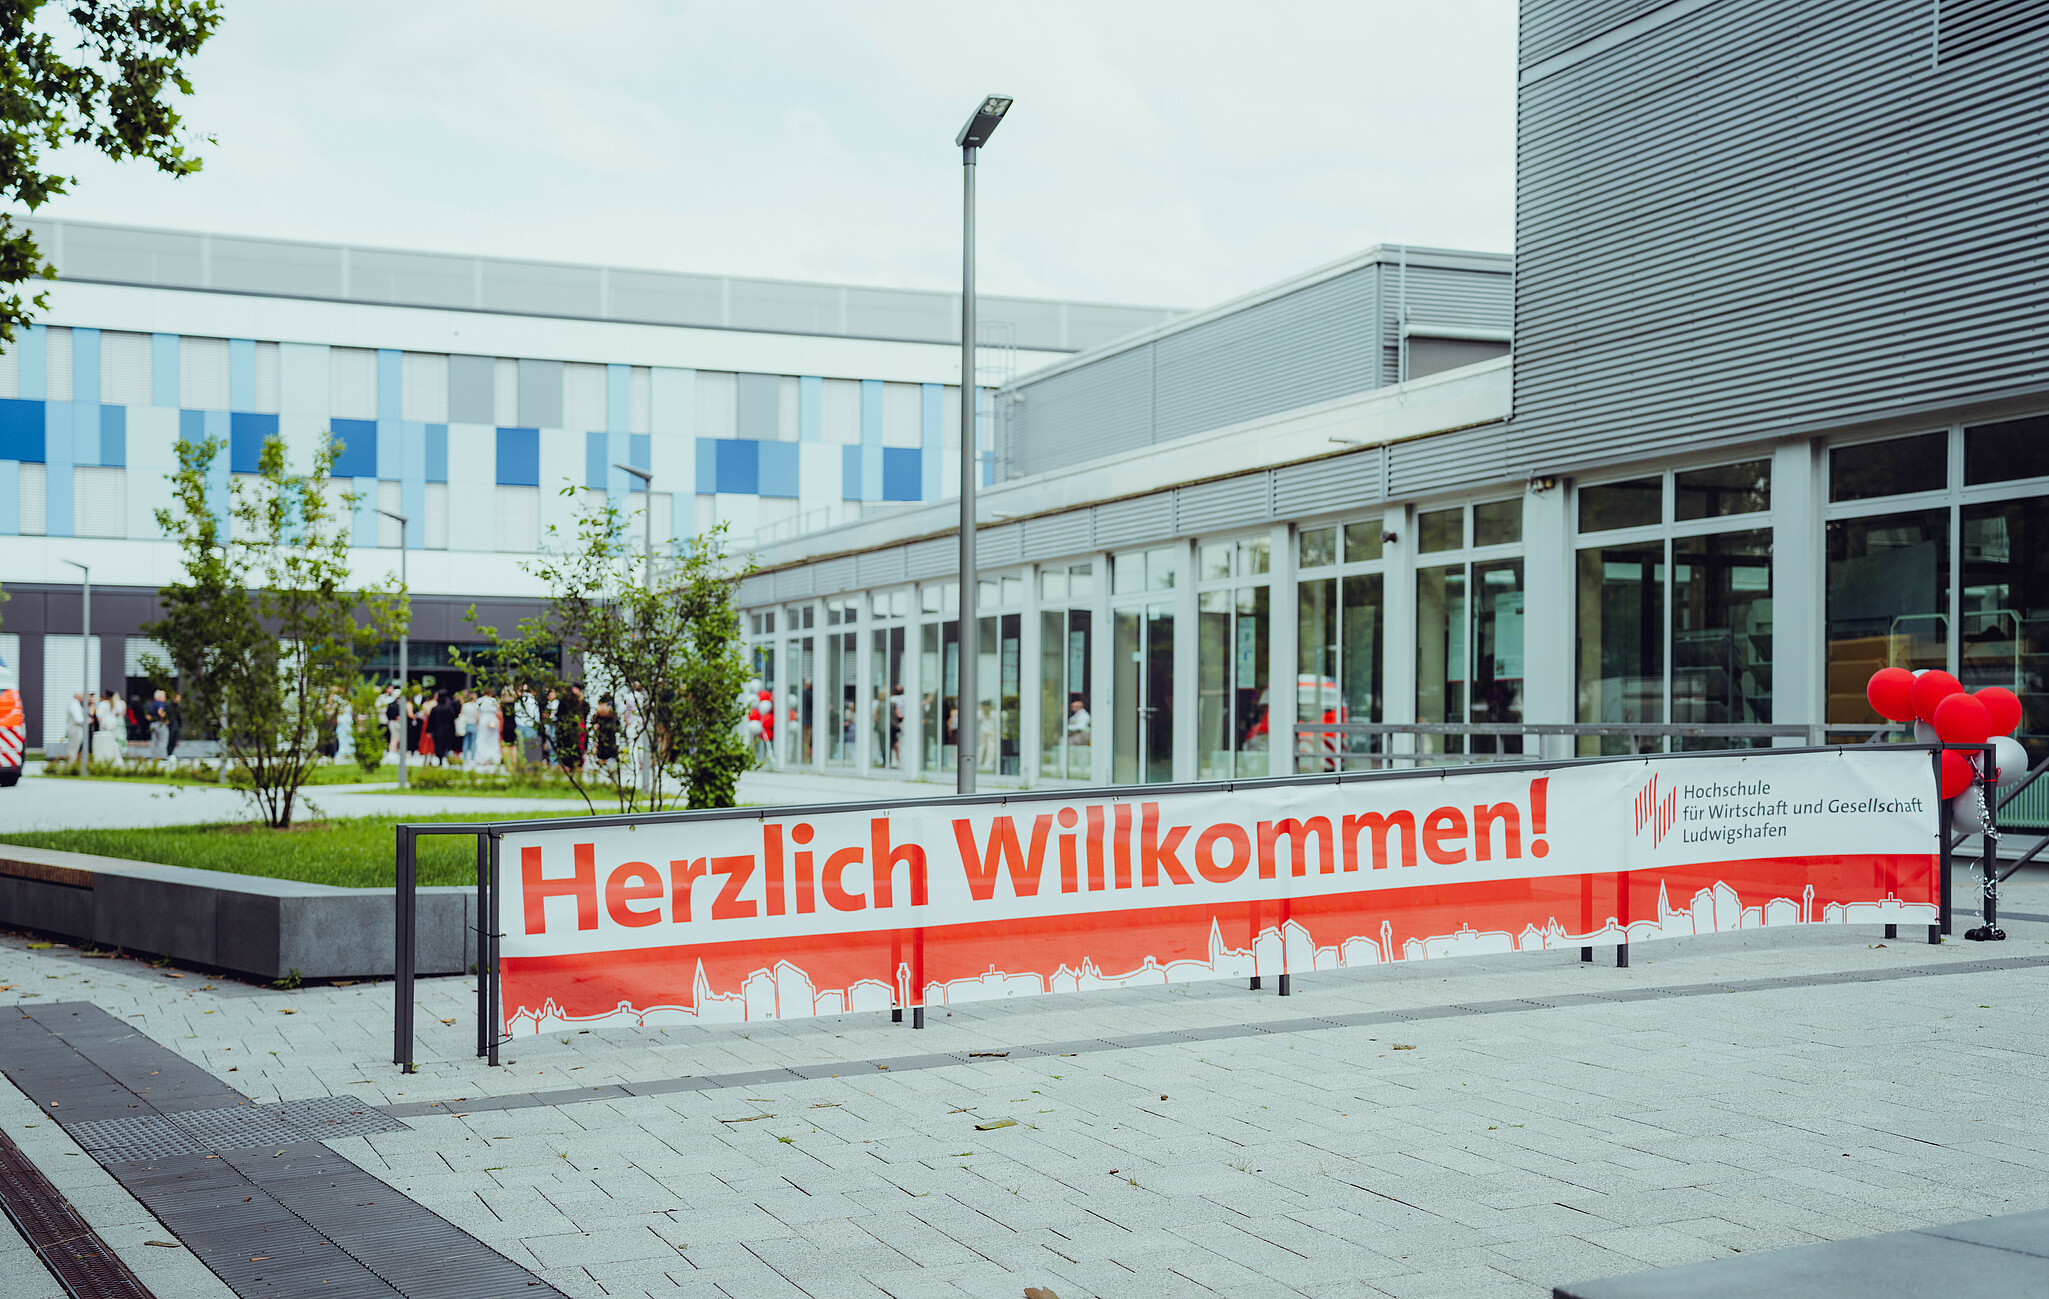 Banner Herzlich Willkommen